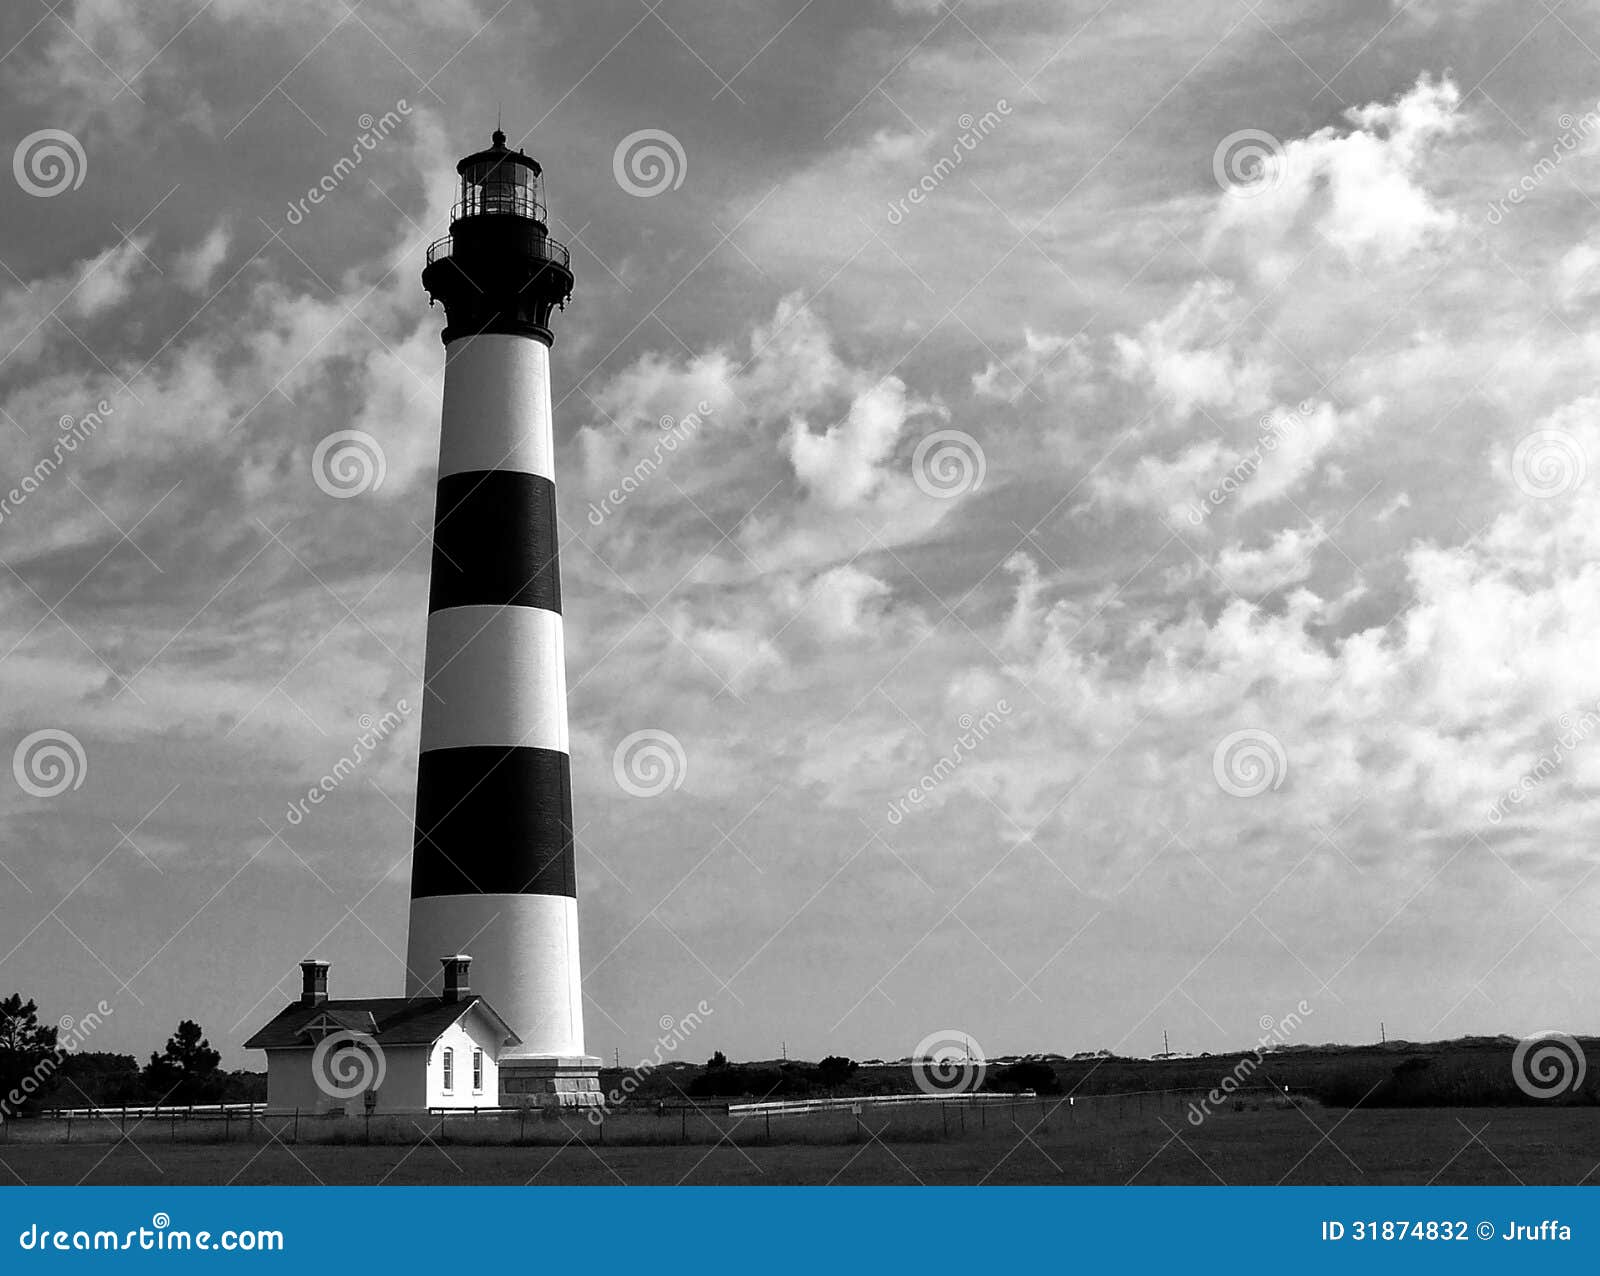 historic carolina lighthouse on summer day